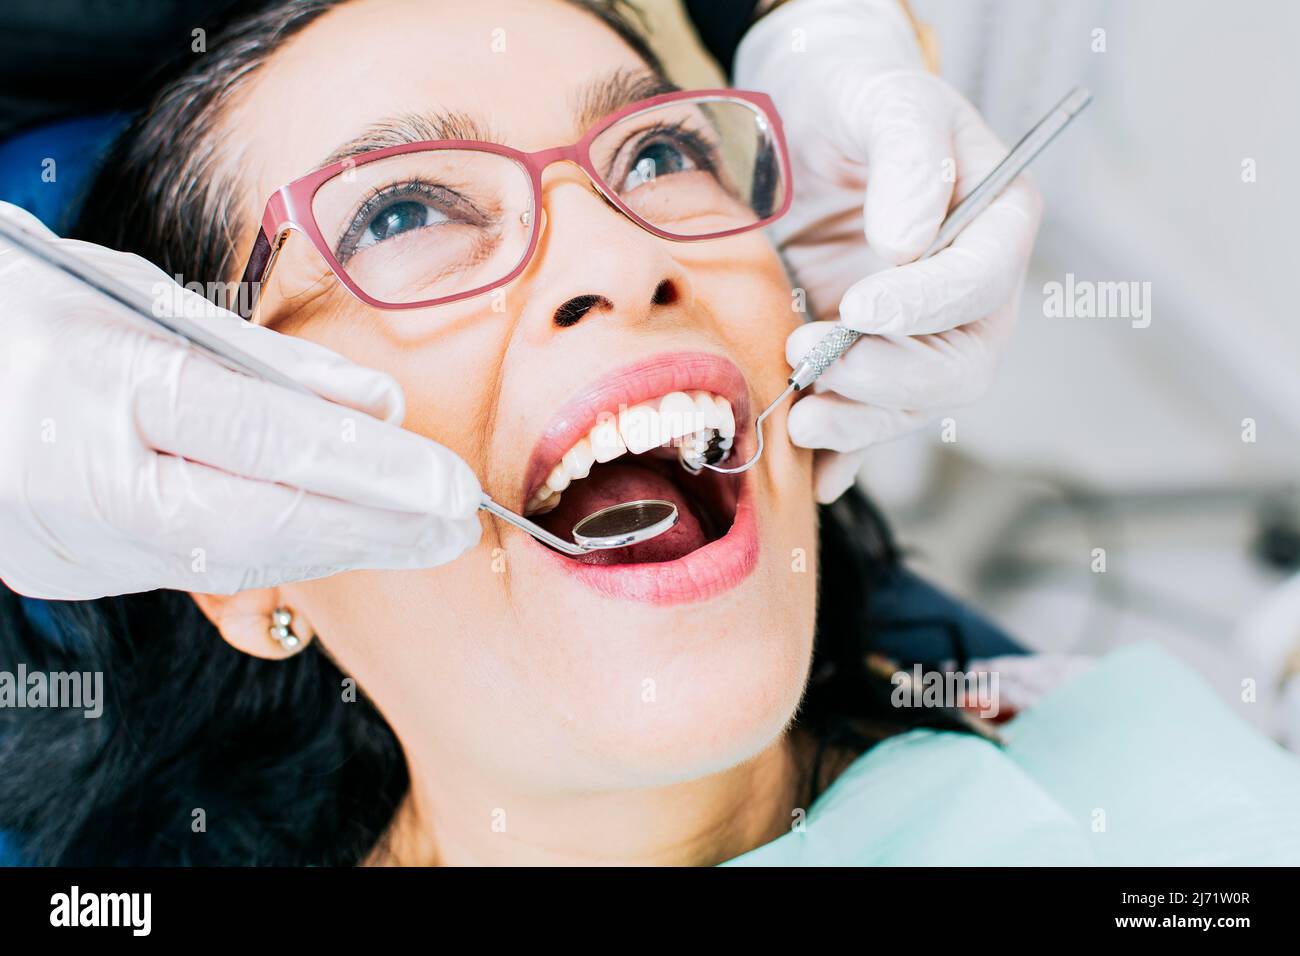 Patient vom Zahnarzt kontrolliert, Nahaufnahme des Zahnarztes mit Patient, Zahnarzt, der Wurzelbehandlung am Patienten durchführt, Zahnarzt, der zahnärztliche Untersuchung durchführt Stockfoto